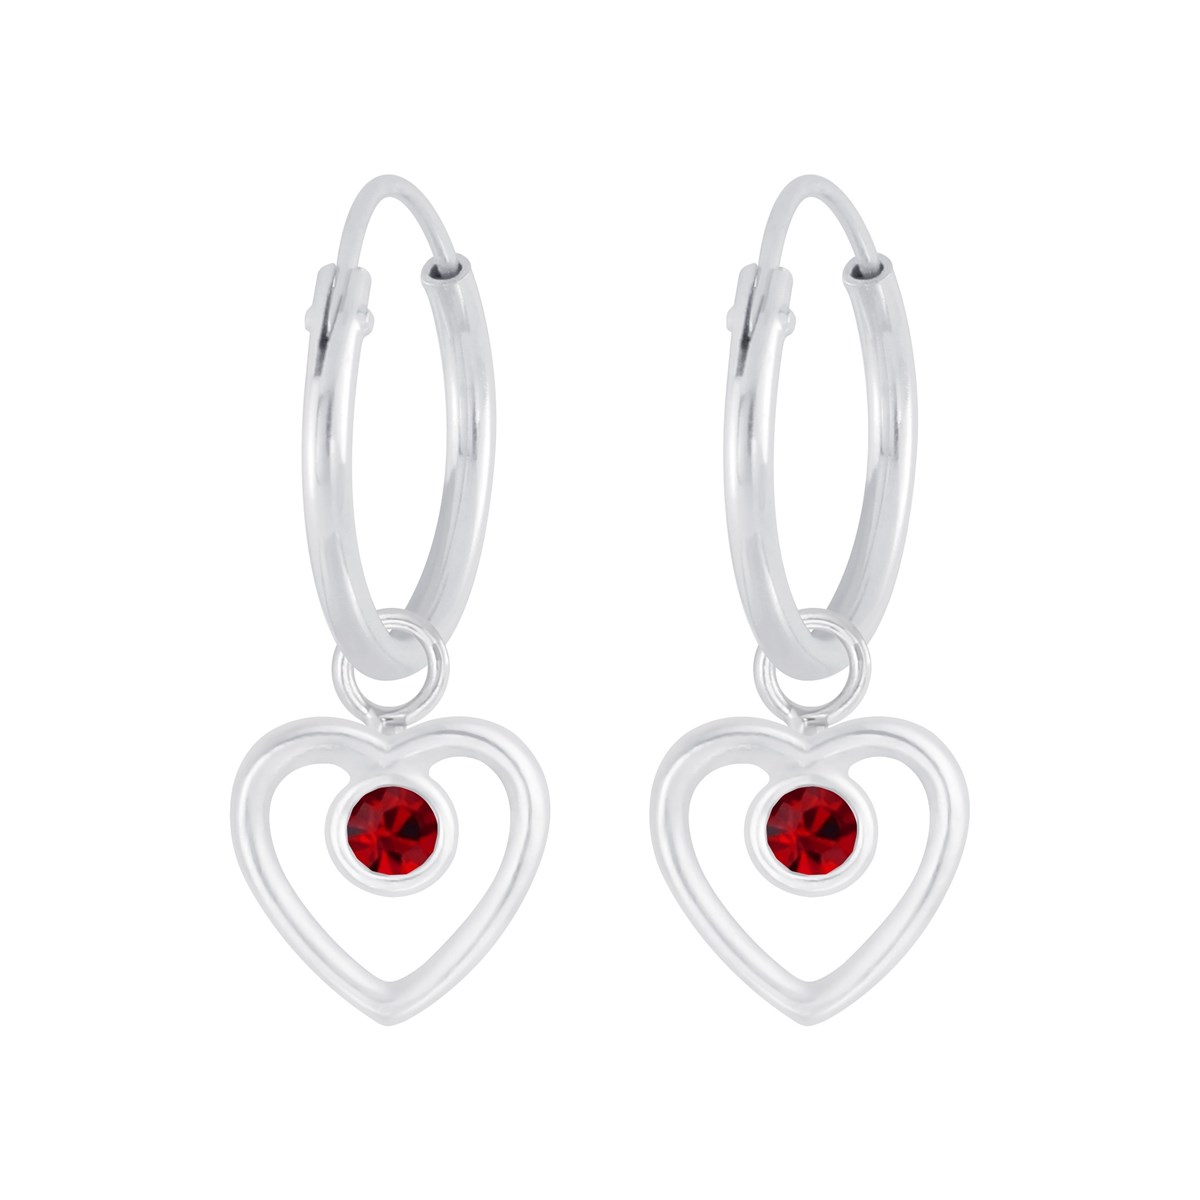 Boucles d'oreilles enfant Coeur en argent 925 et cristal rouge